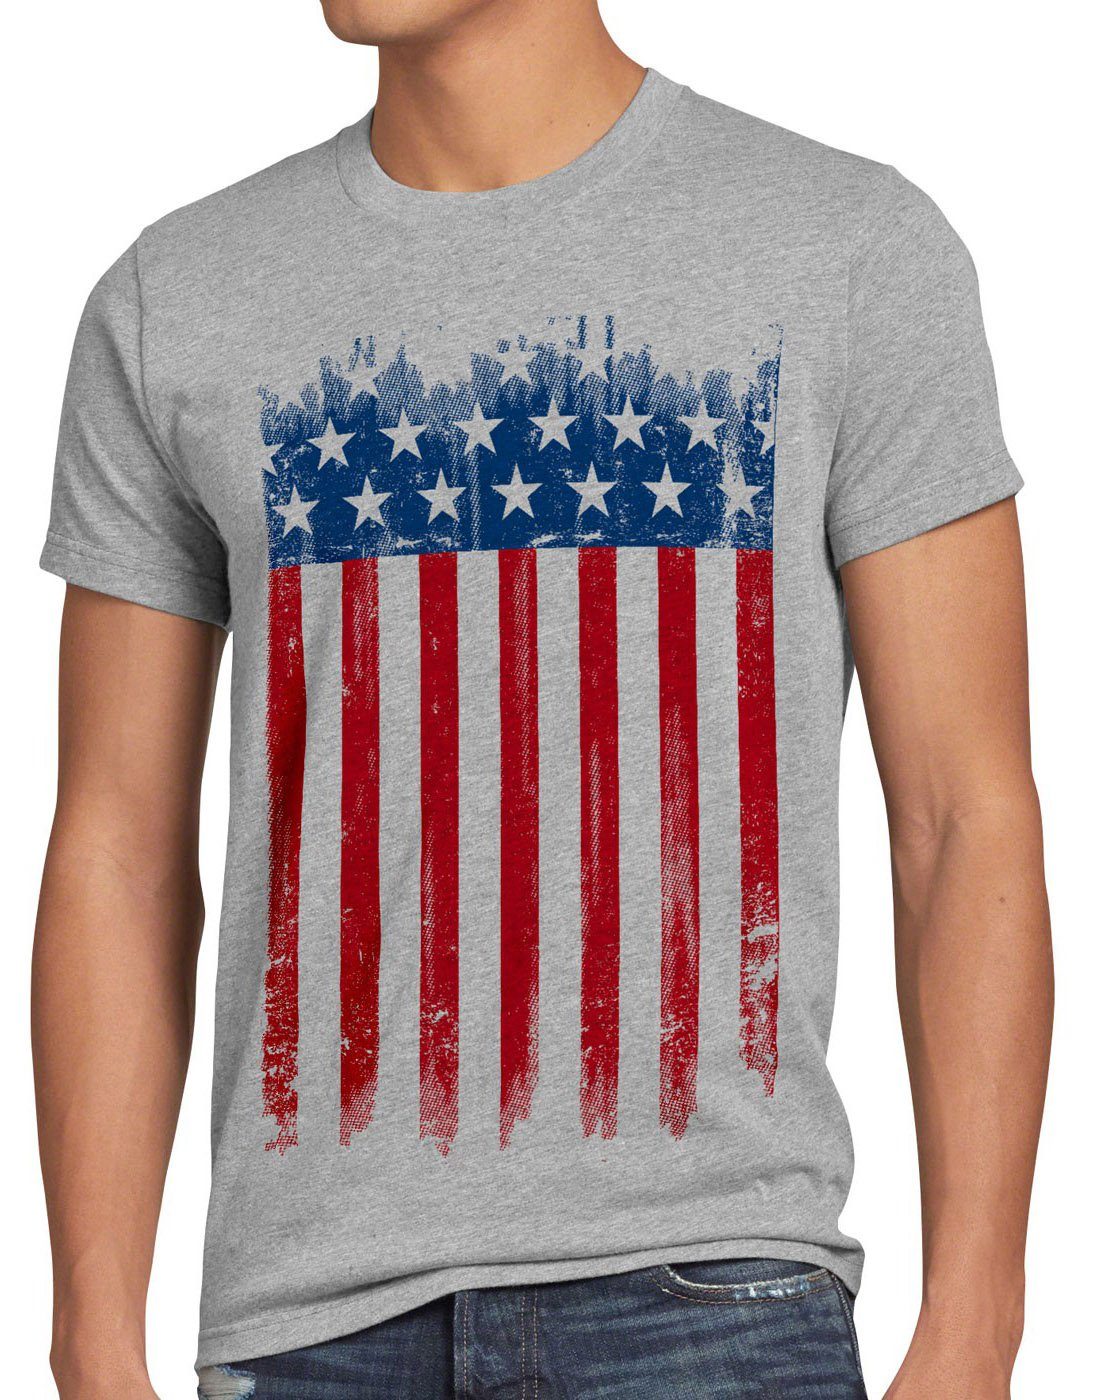 staaten meliert US states von grau united Flagge america vereinigte amerika Print-Shirt Herren T-Shirt style3